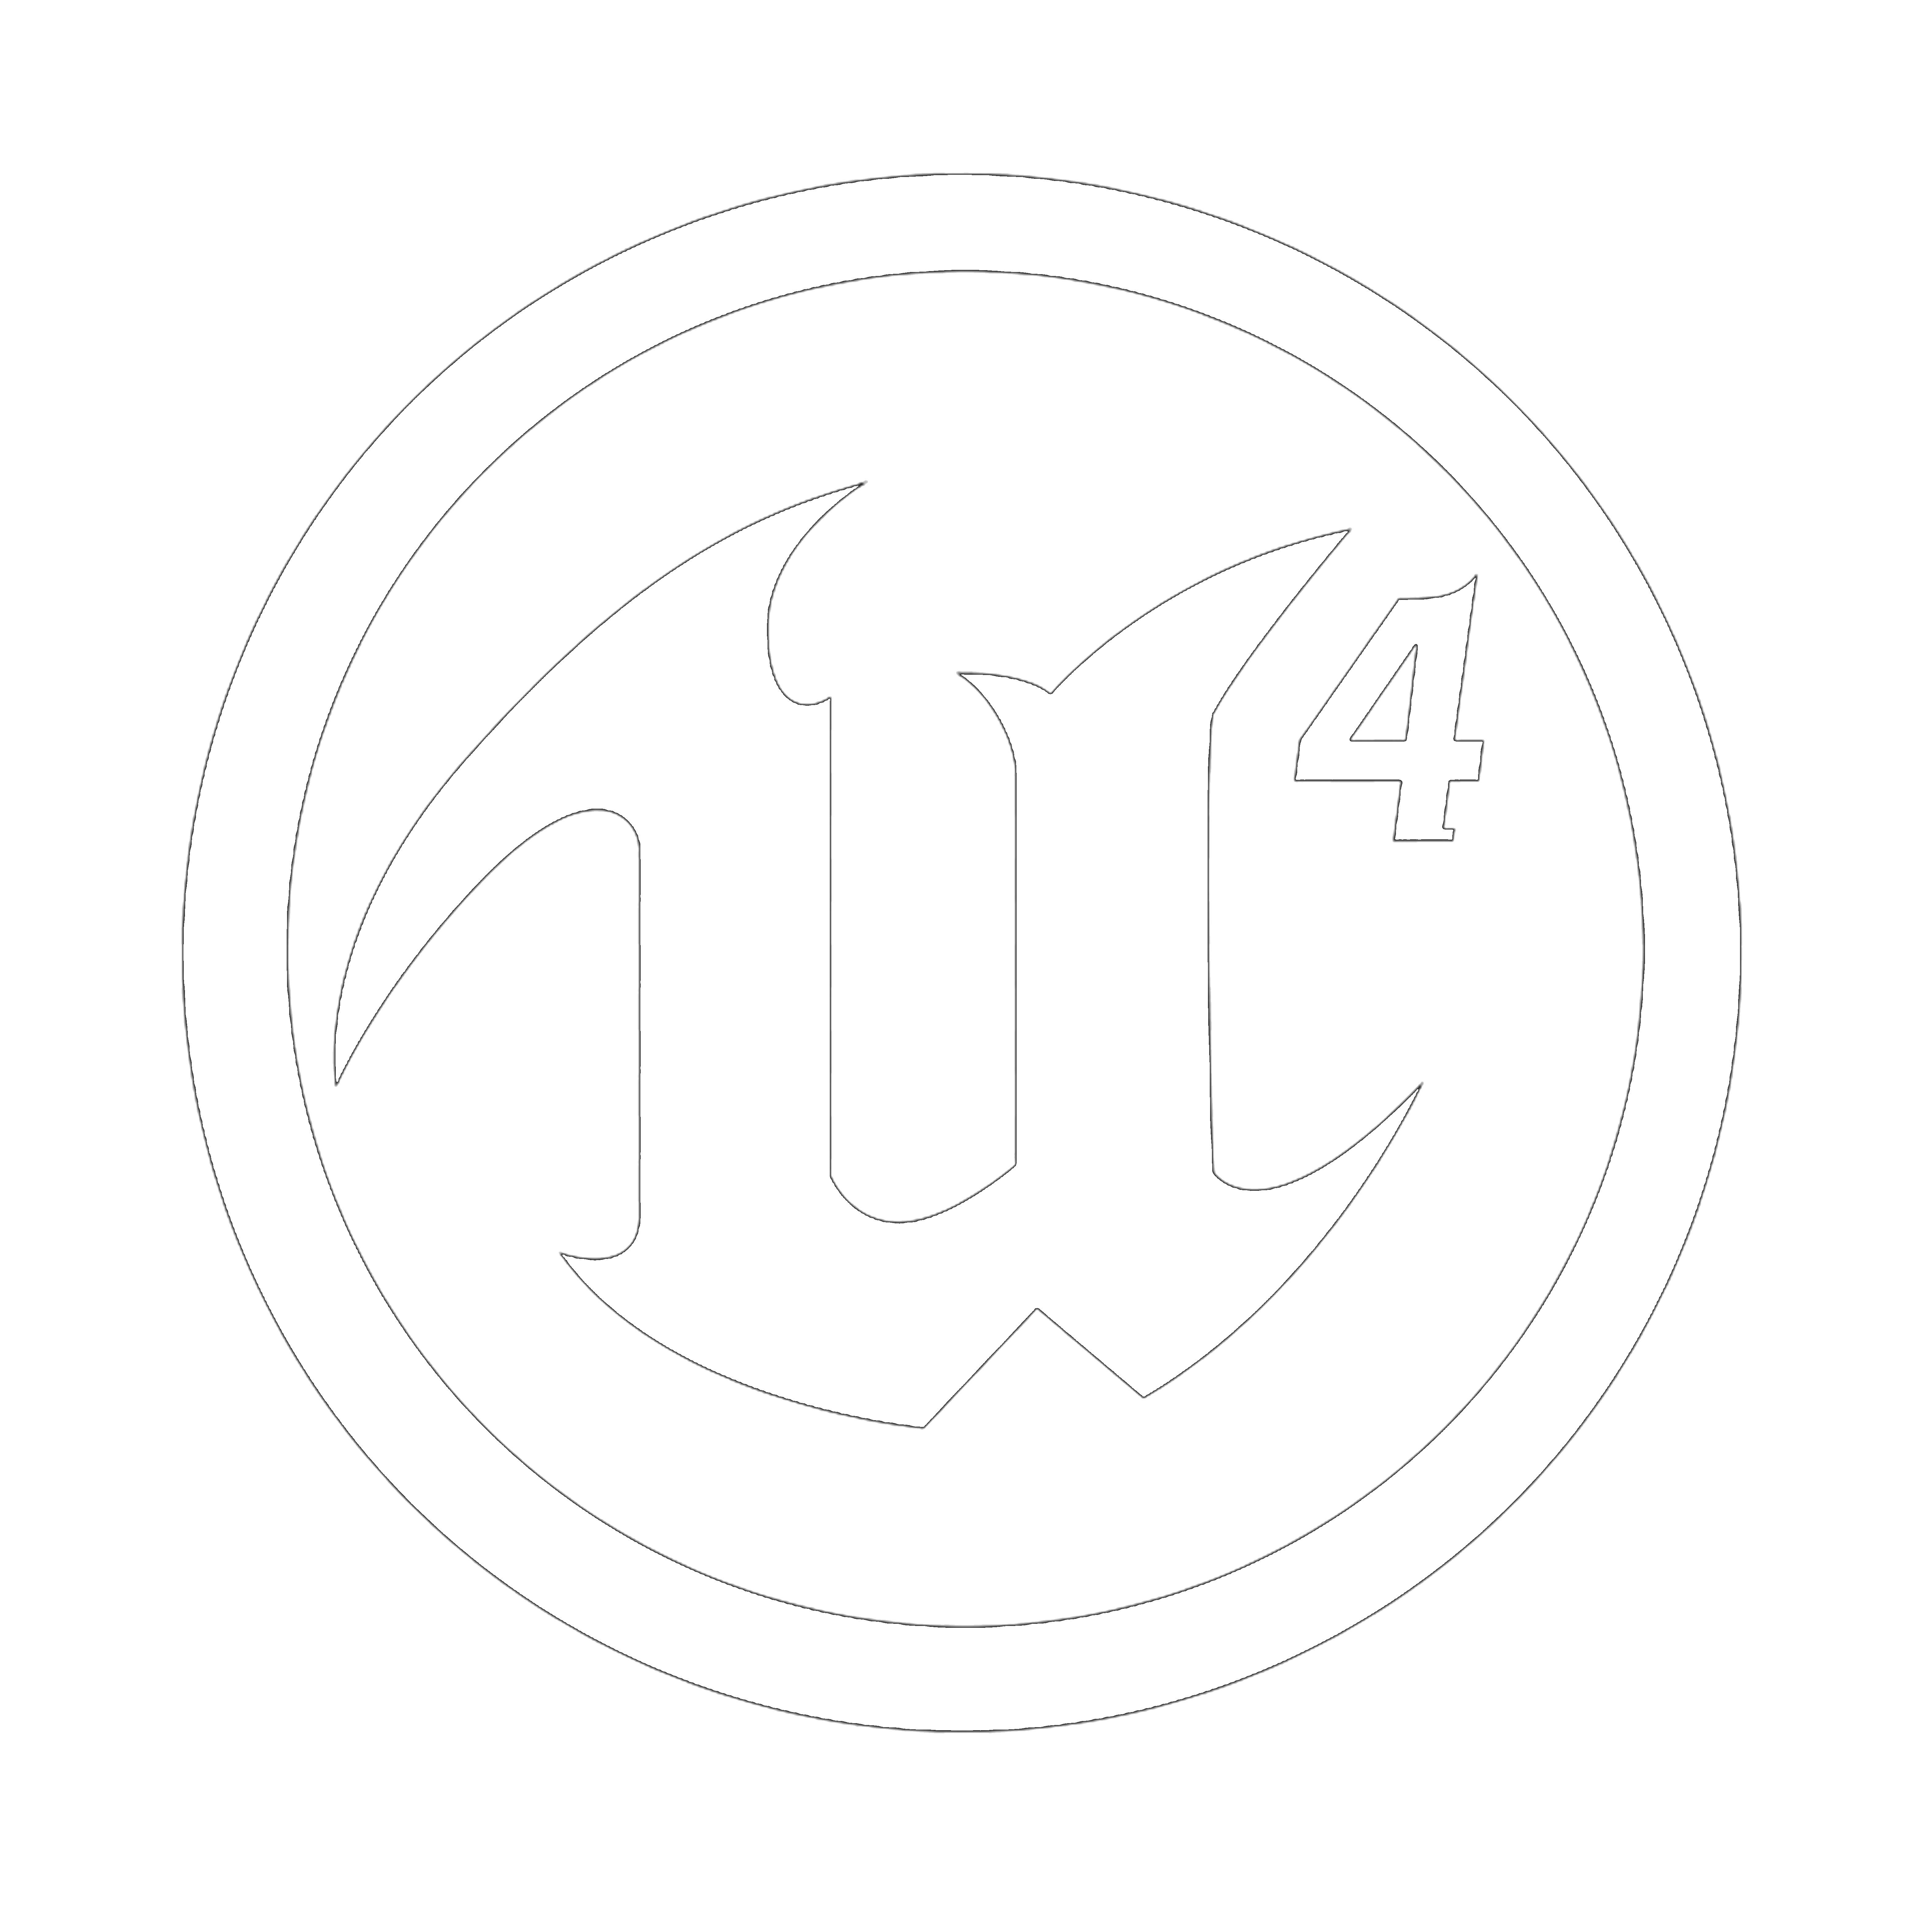 The icon representing Unreal Engine 4